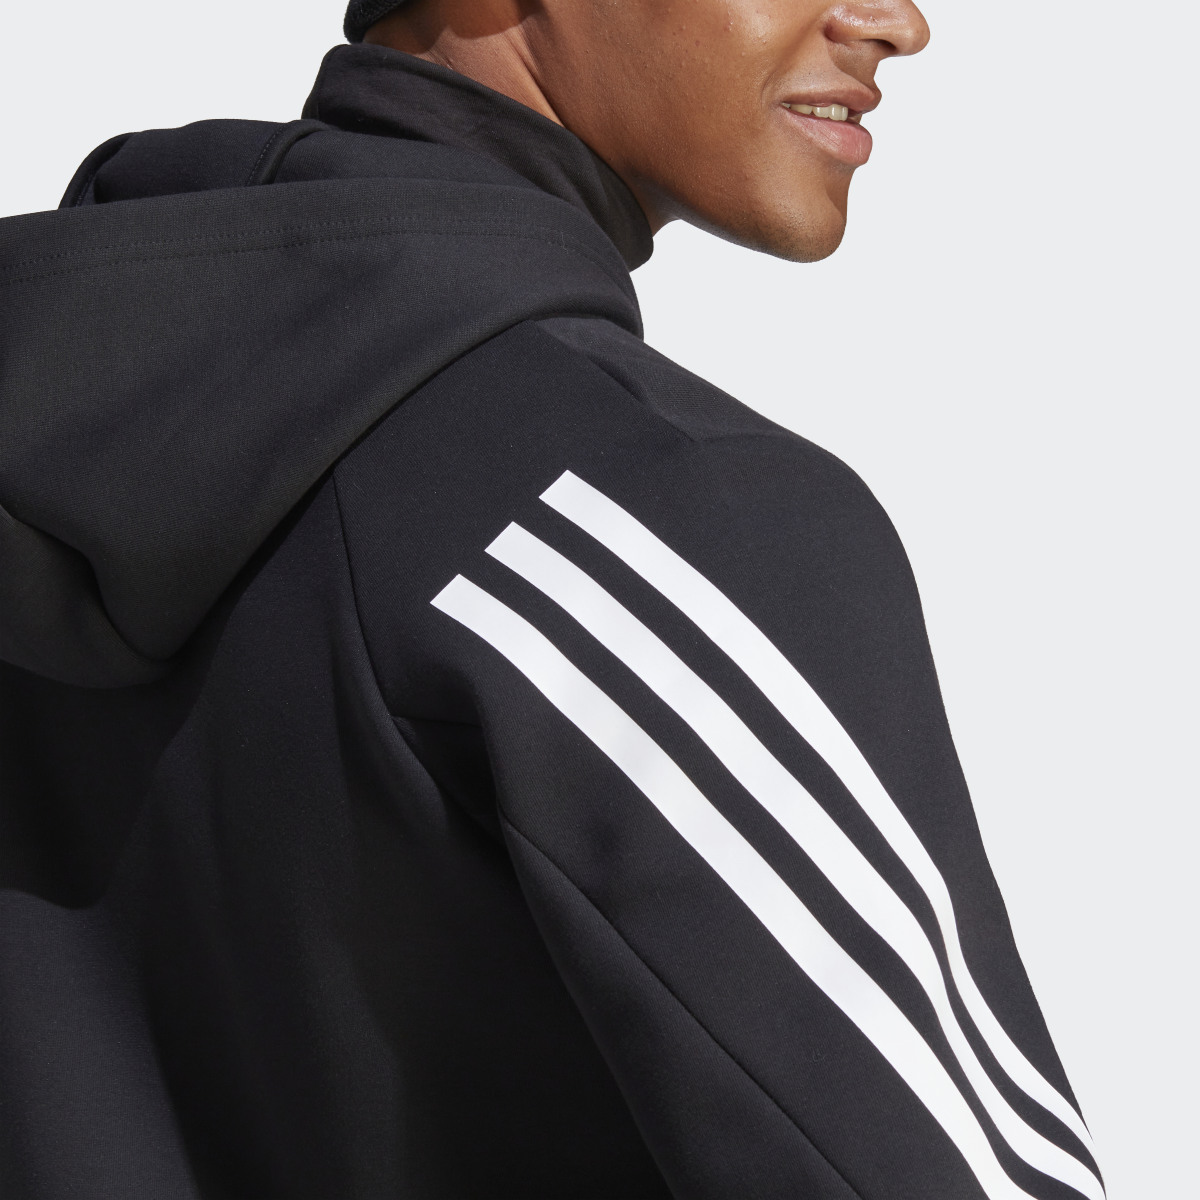 Adidas Future Icons 3-Stripes Full-Zip Kapüşonlu Üst. 8